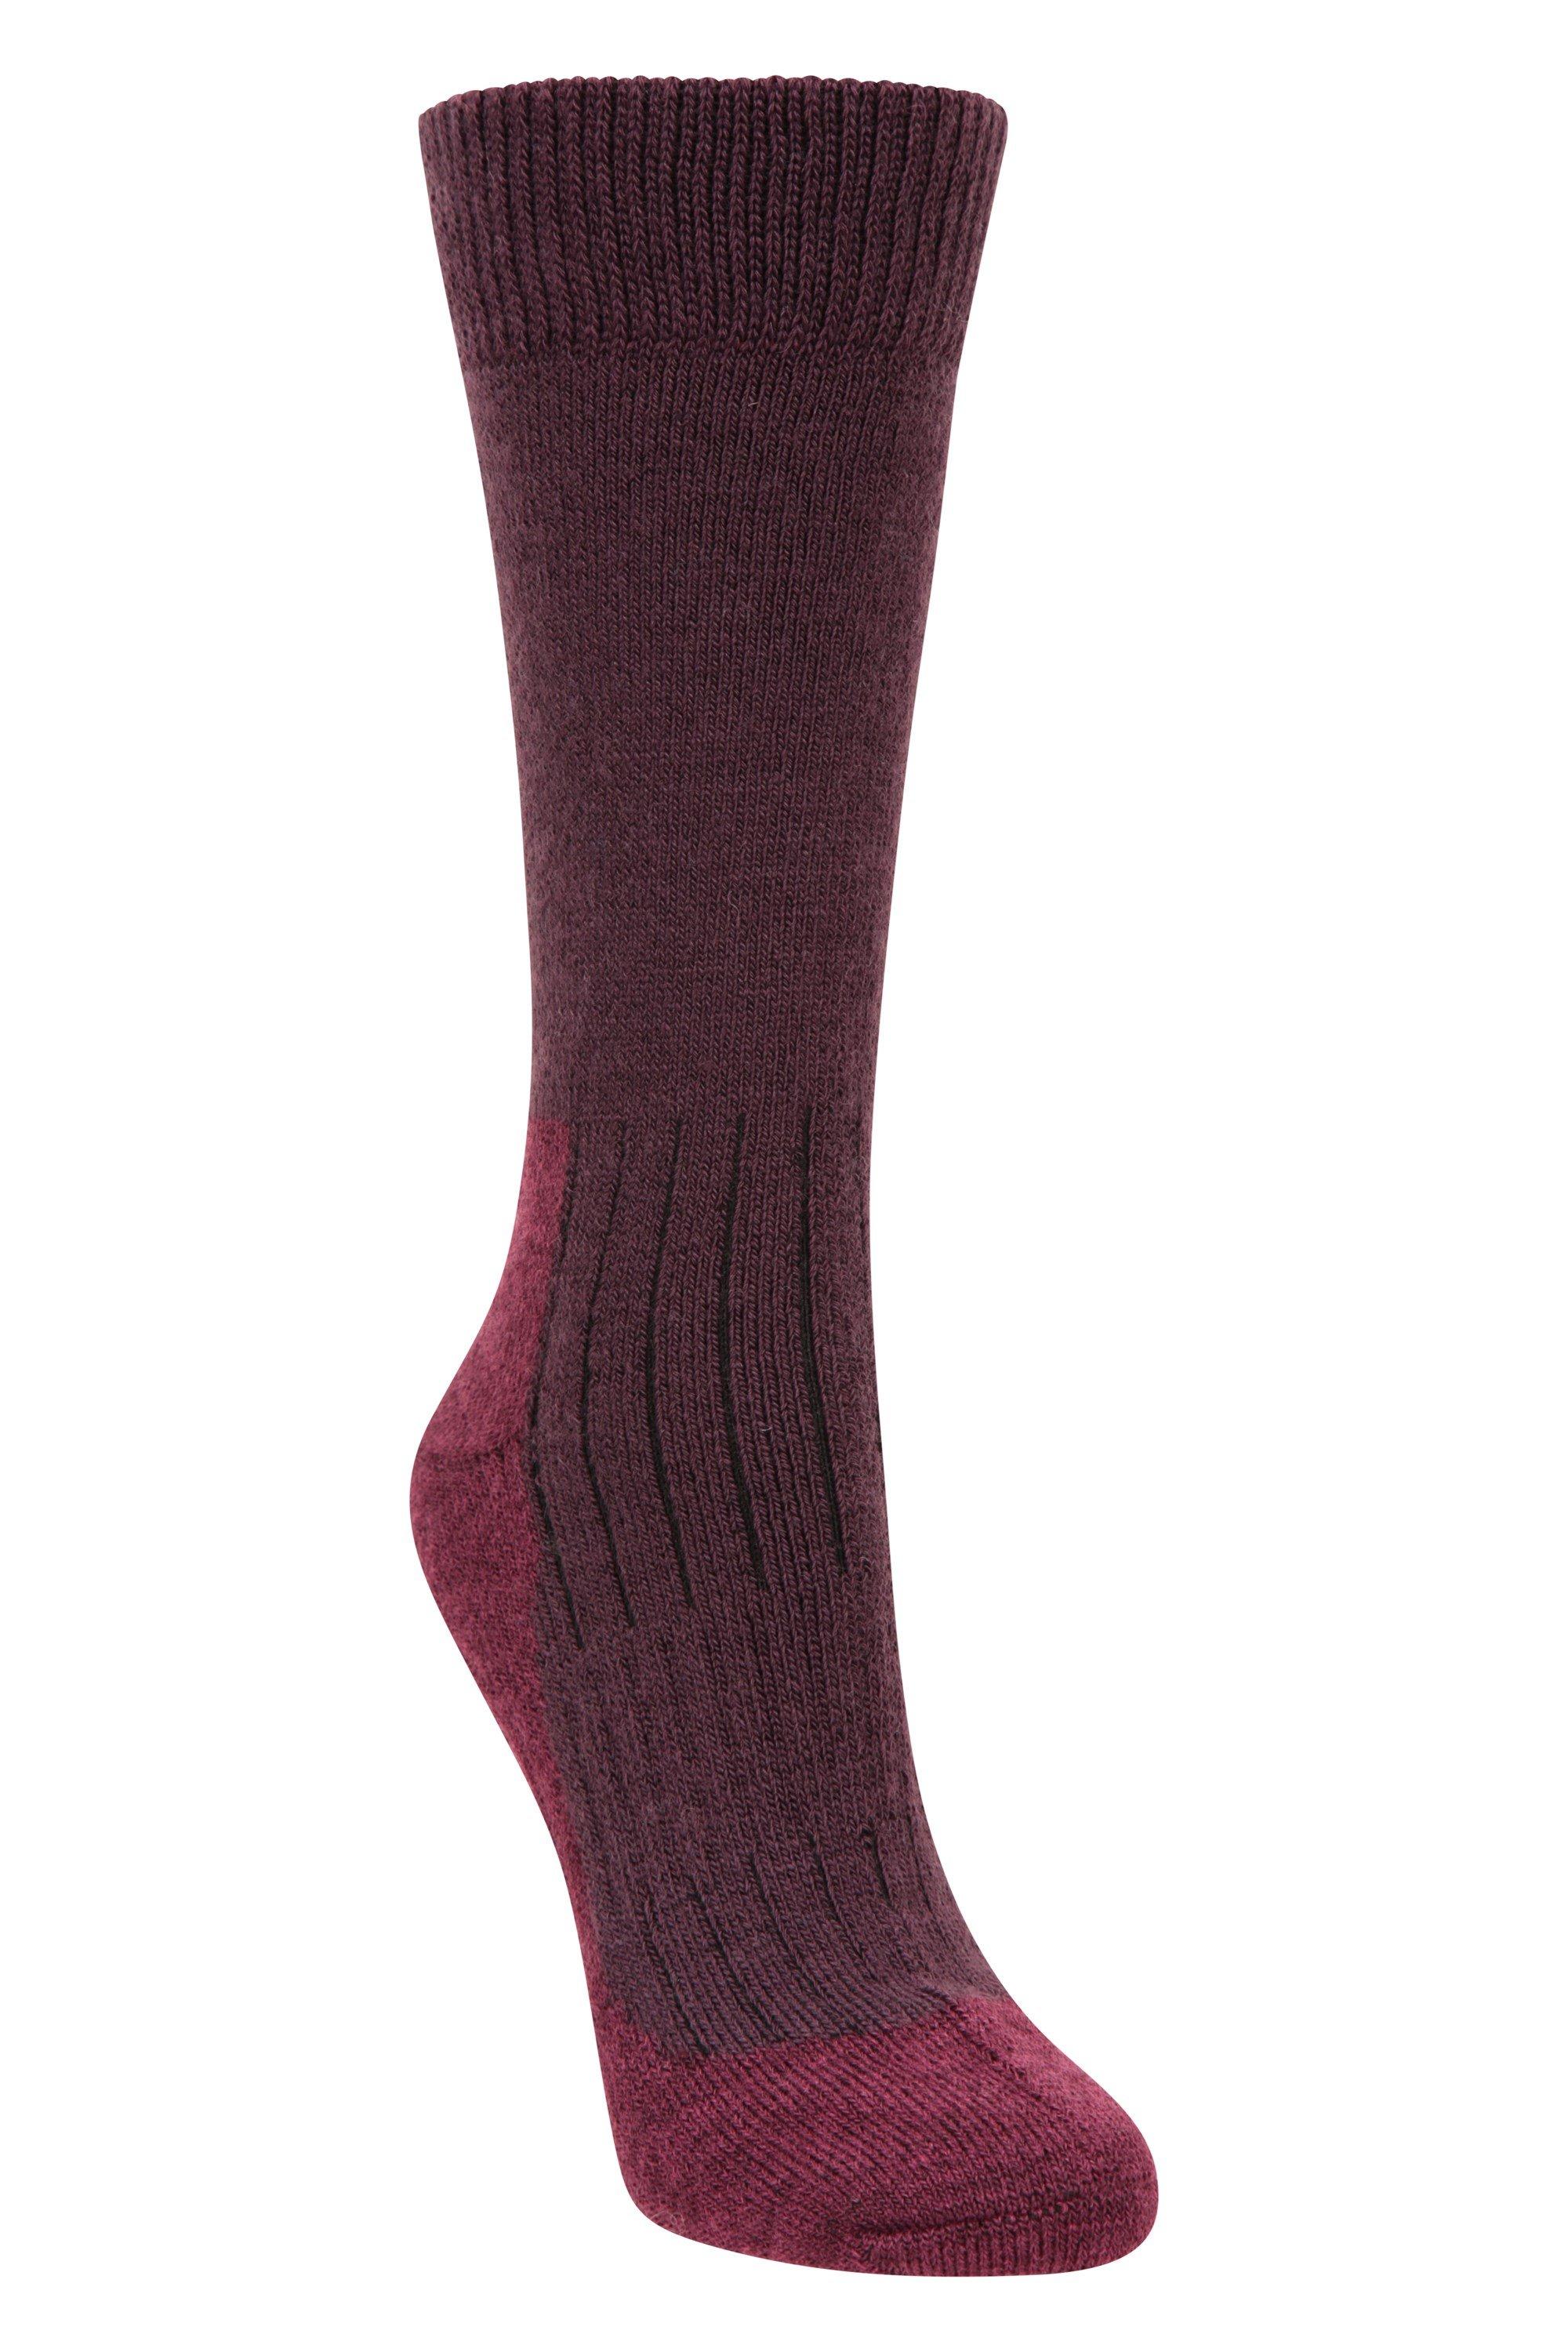 Merino Socks Smooth Toe  Thermal Explorer Sock